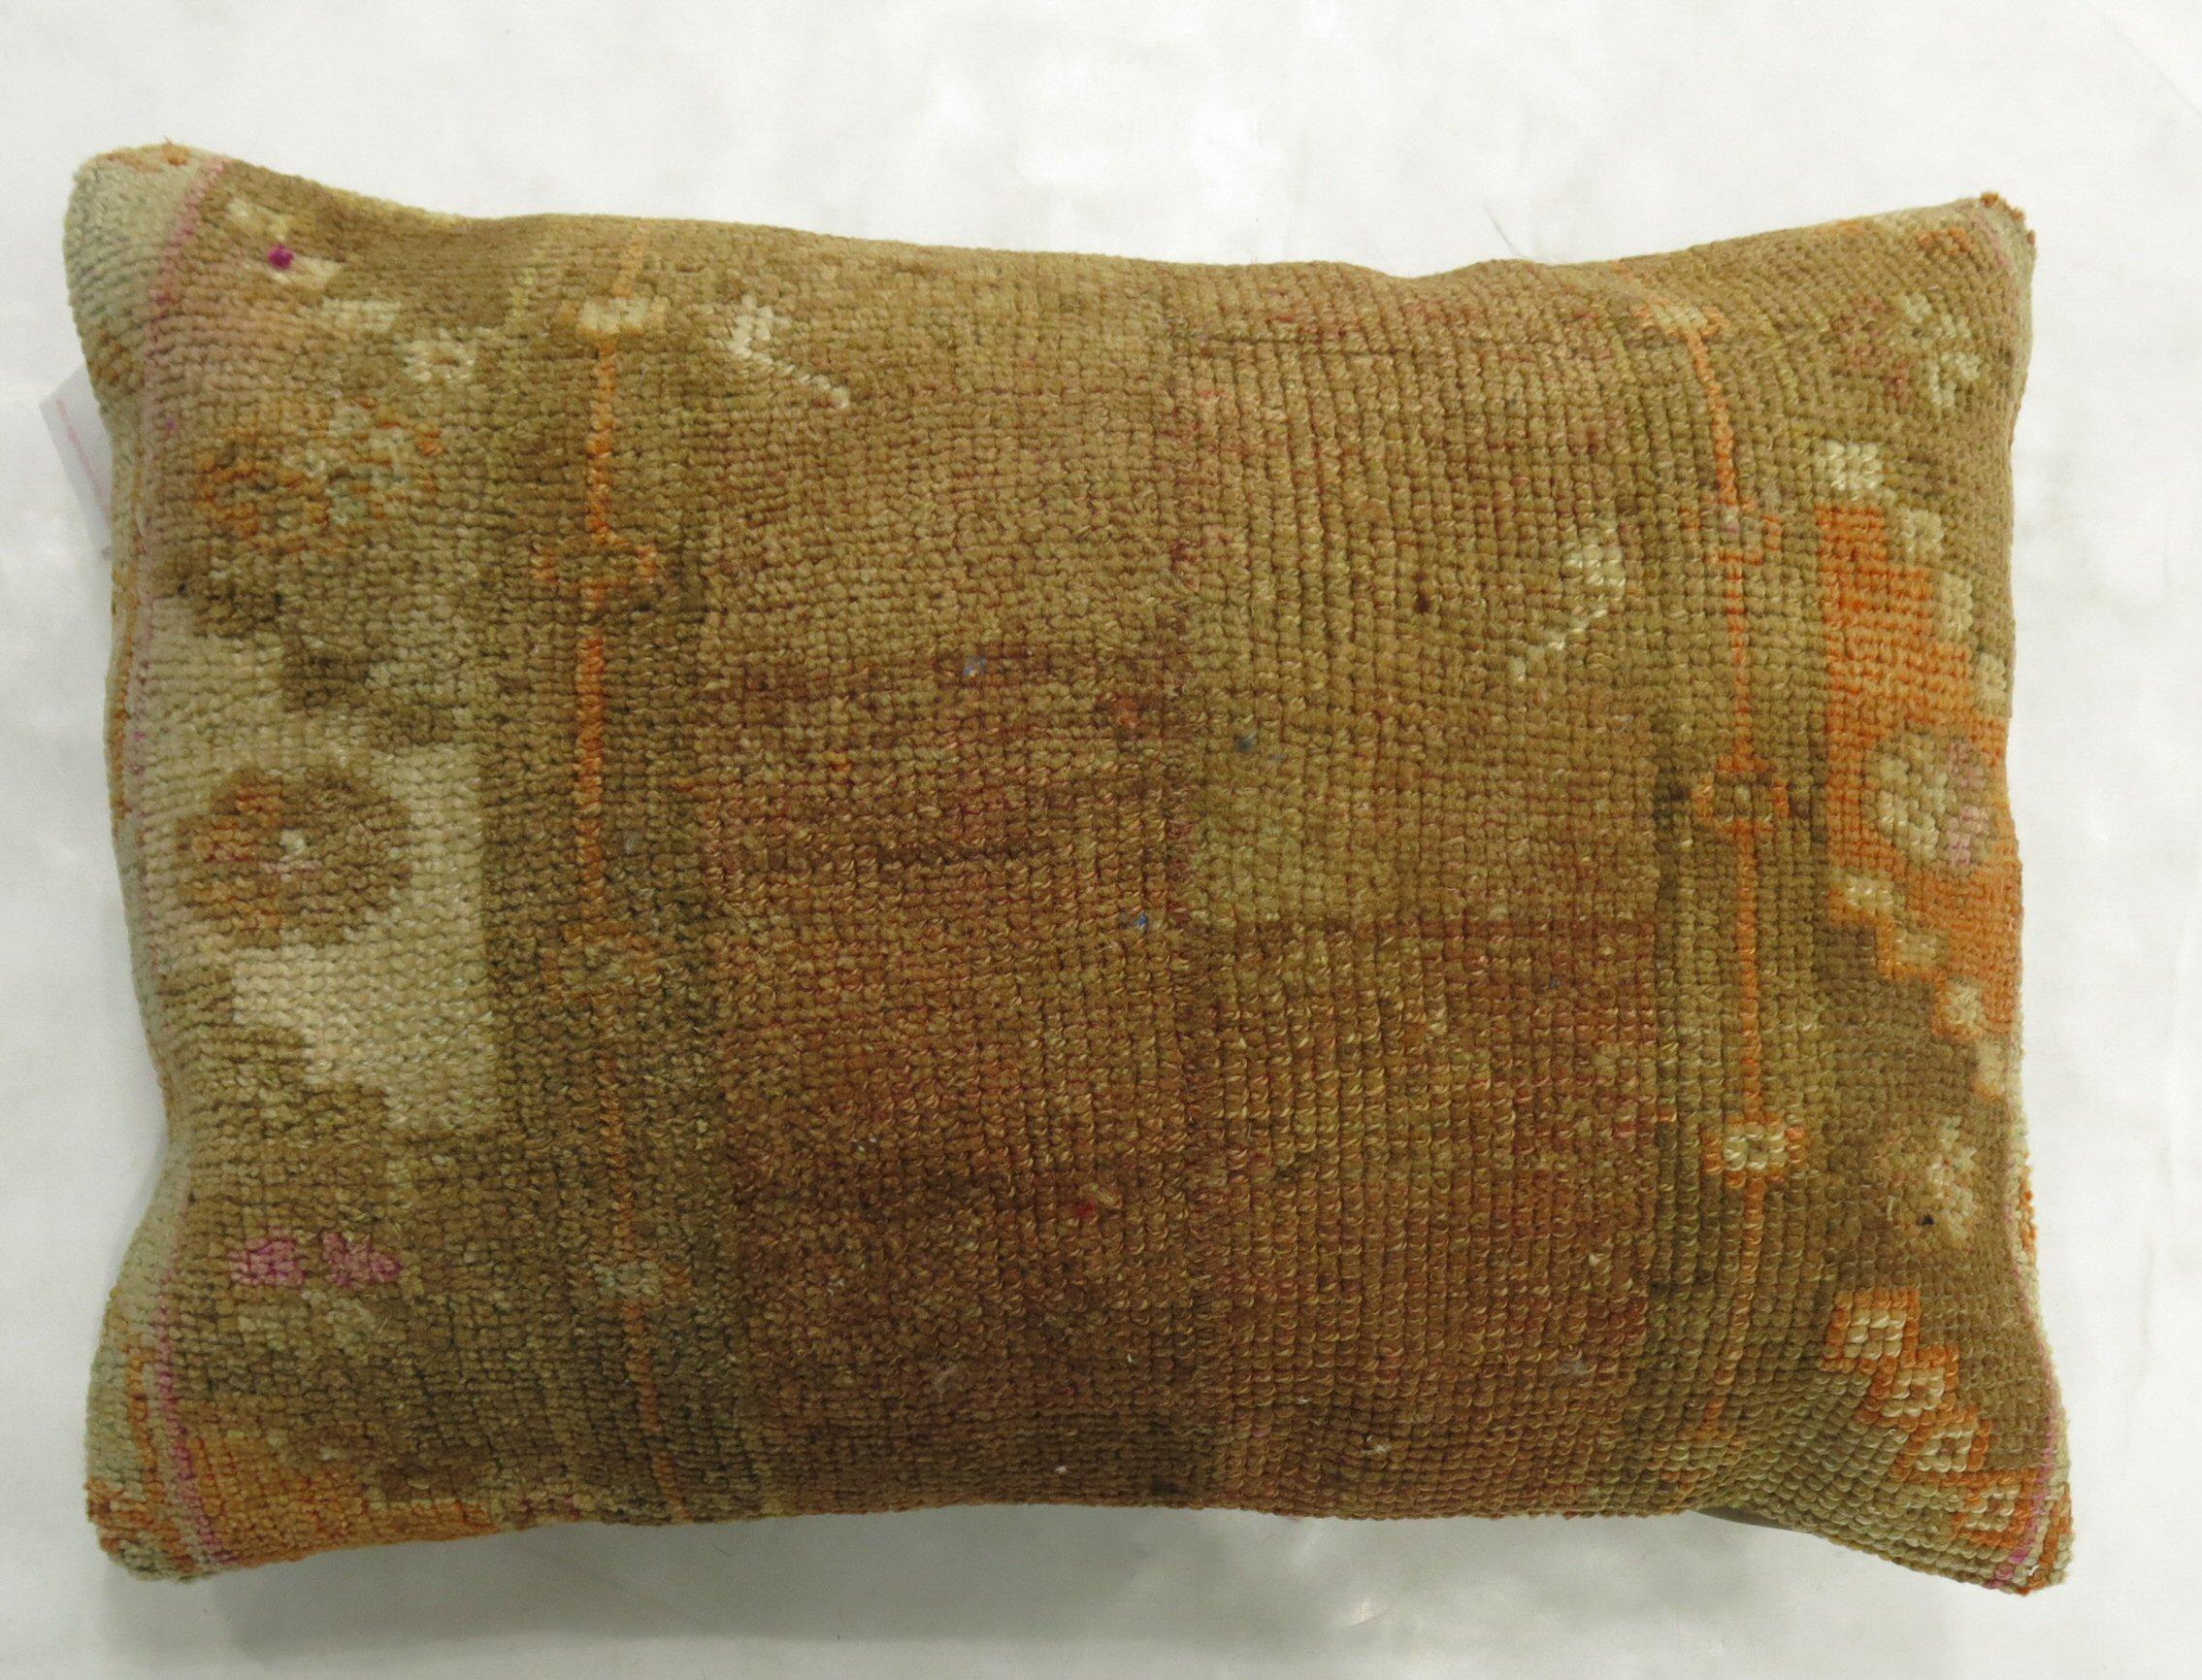 Lendenkissen aus einem alten türkischen anatolischen Teppich. 

Maße: 16'' x 24''.